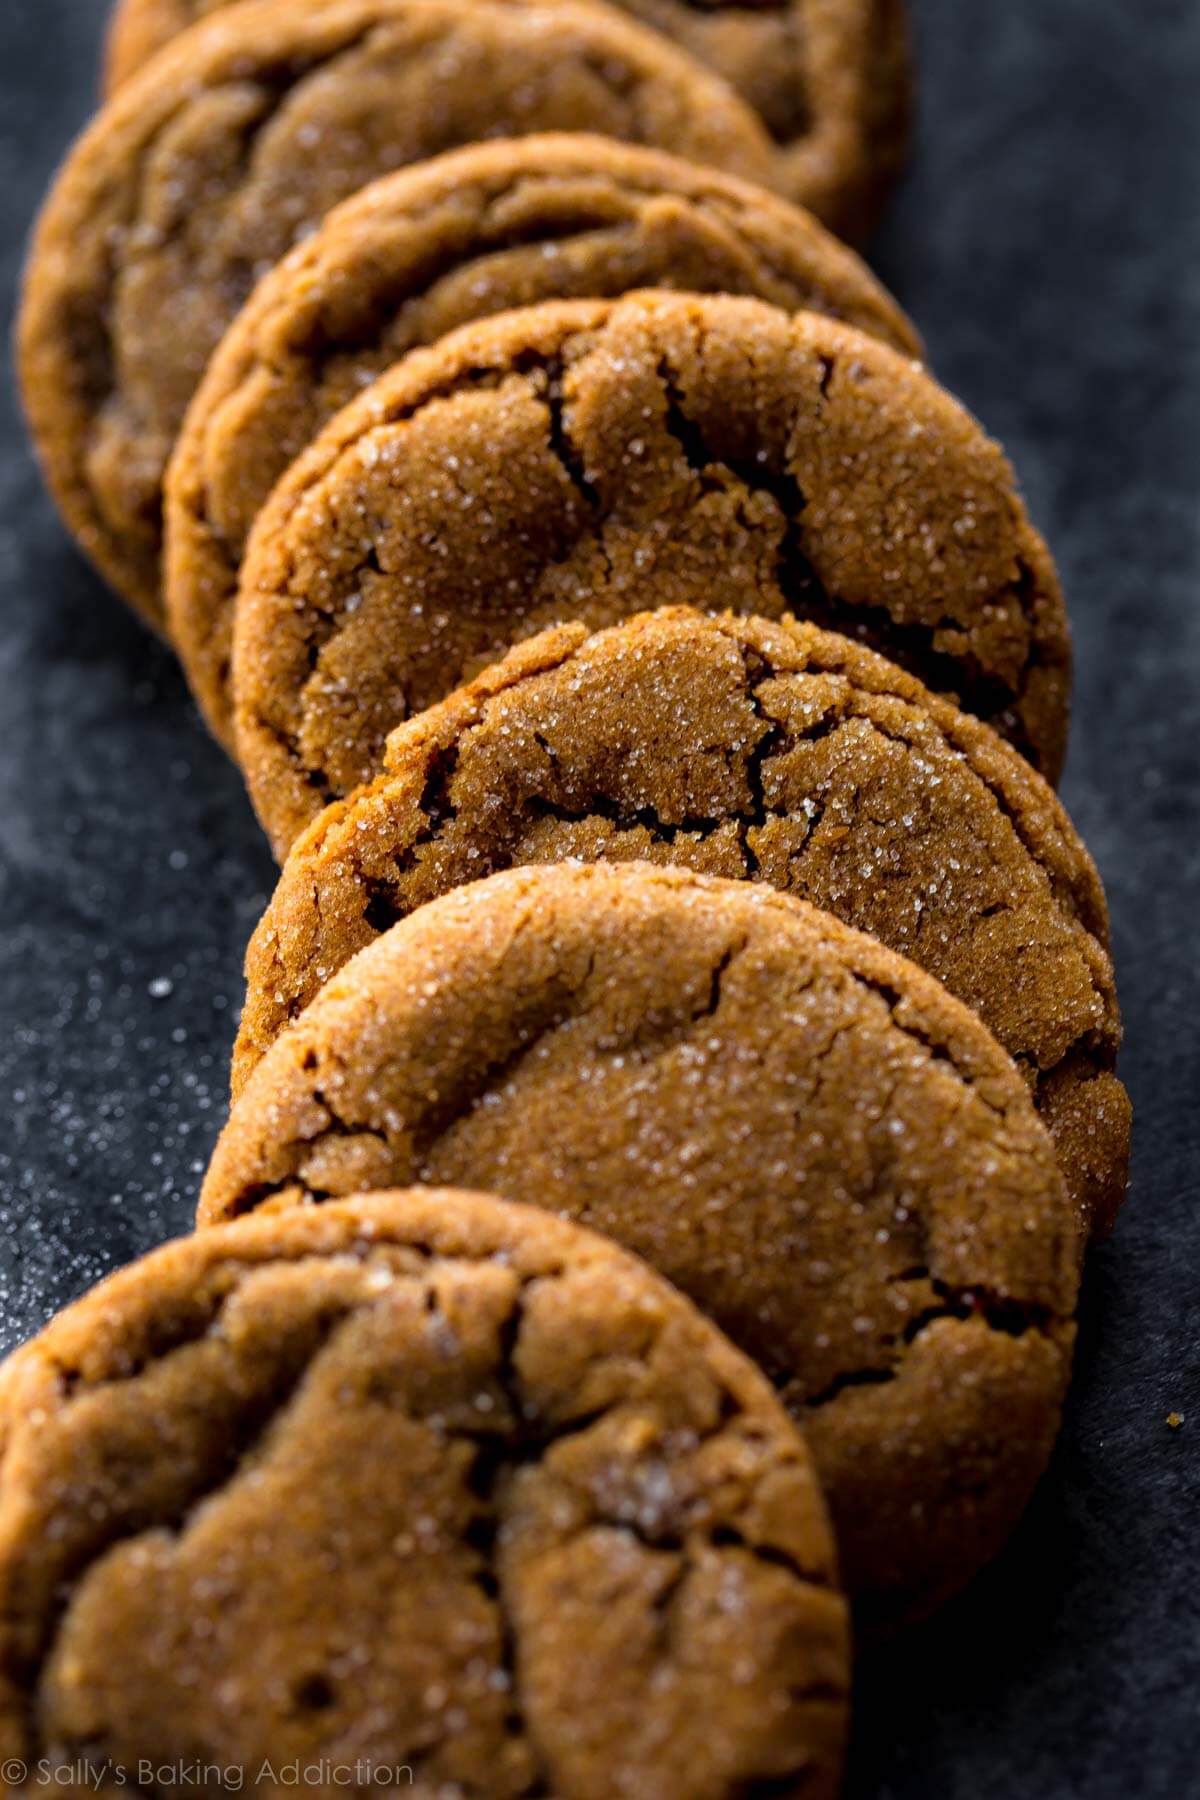 Les biscuits à la mélasse très doux et moelleux seront votre biscuit de Noël préféré! Tant de saveurs délicieuses dans une recette de biscuit facile. Recette sur sallysbakingaddiction.com